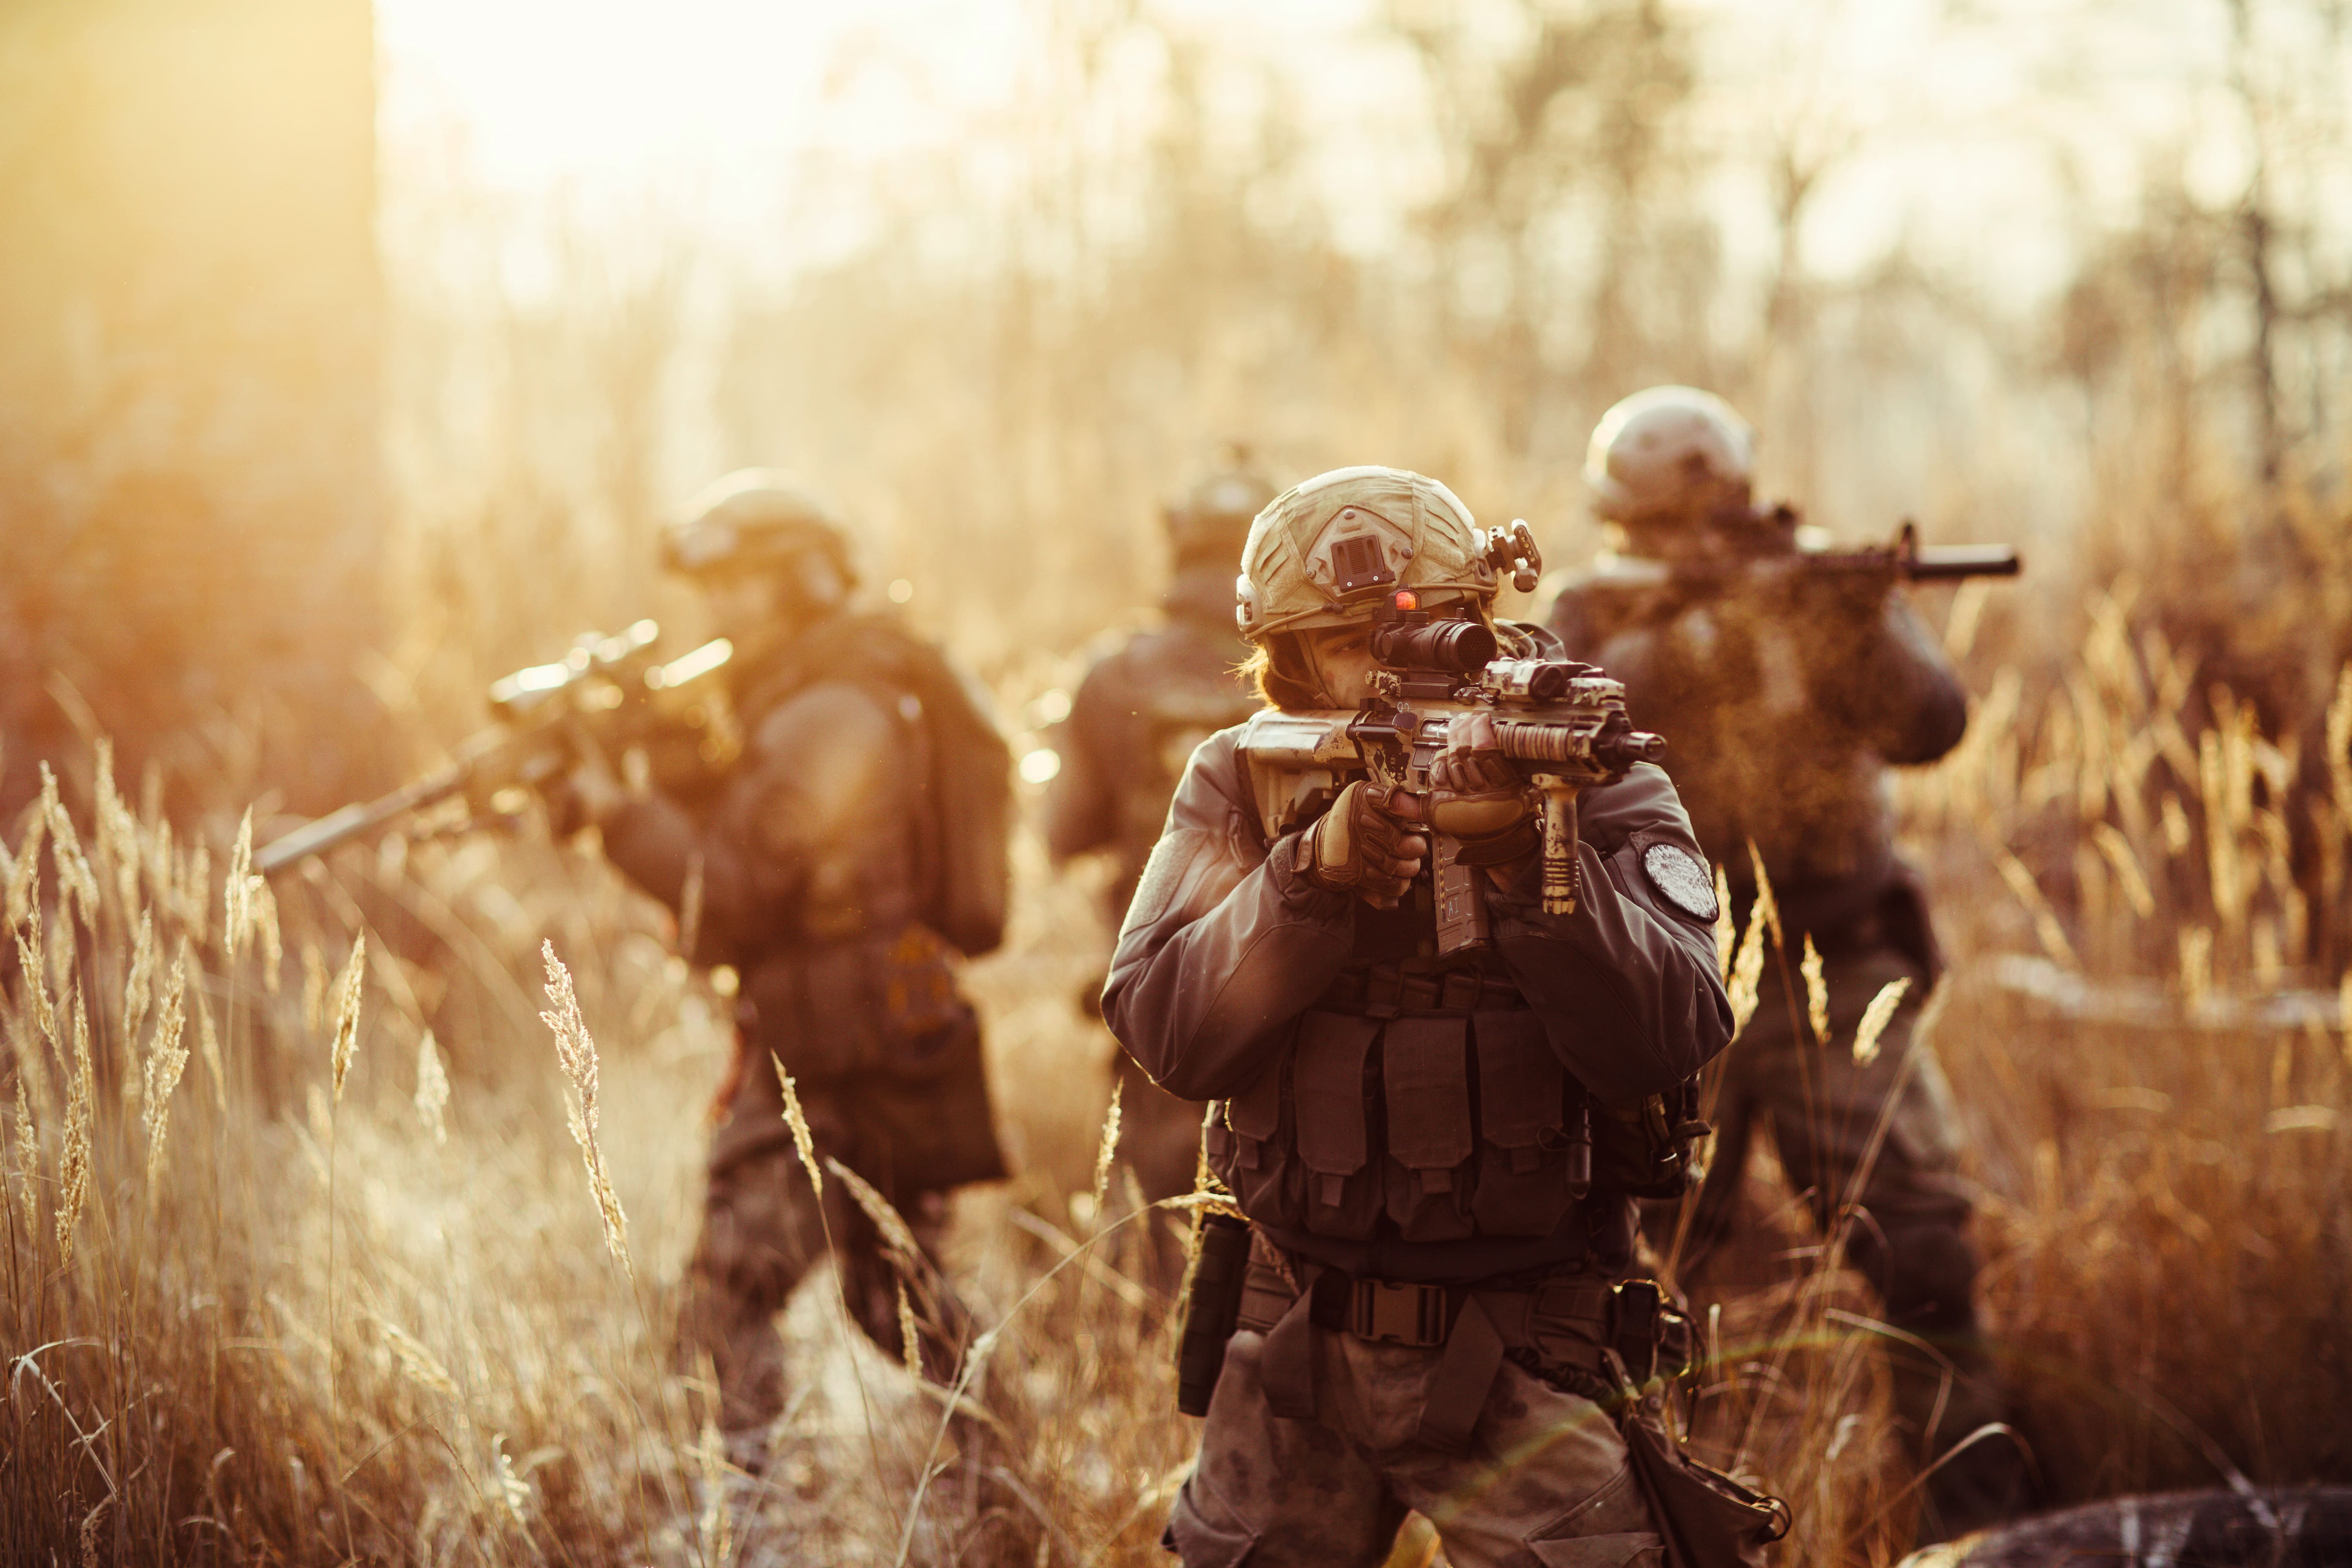 Comment l’imagerie thermique contribue à la protection des soldats sur le terrain des opérations 